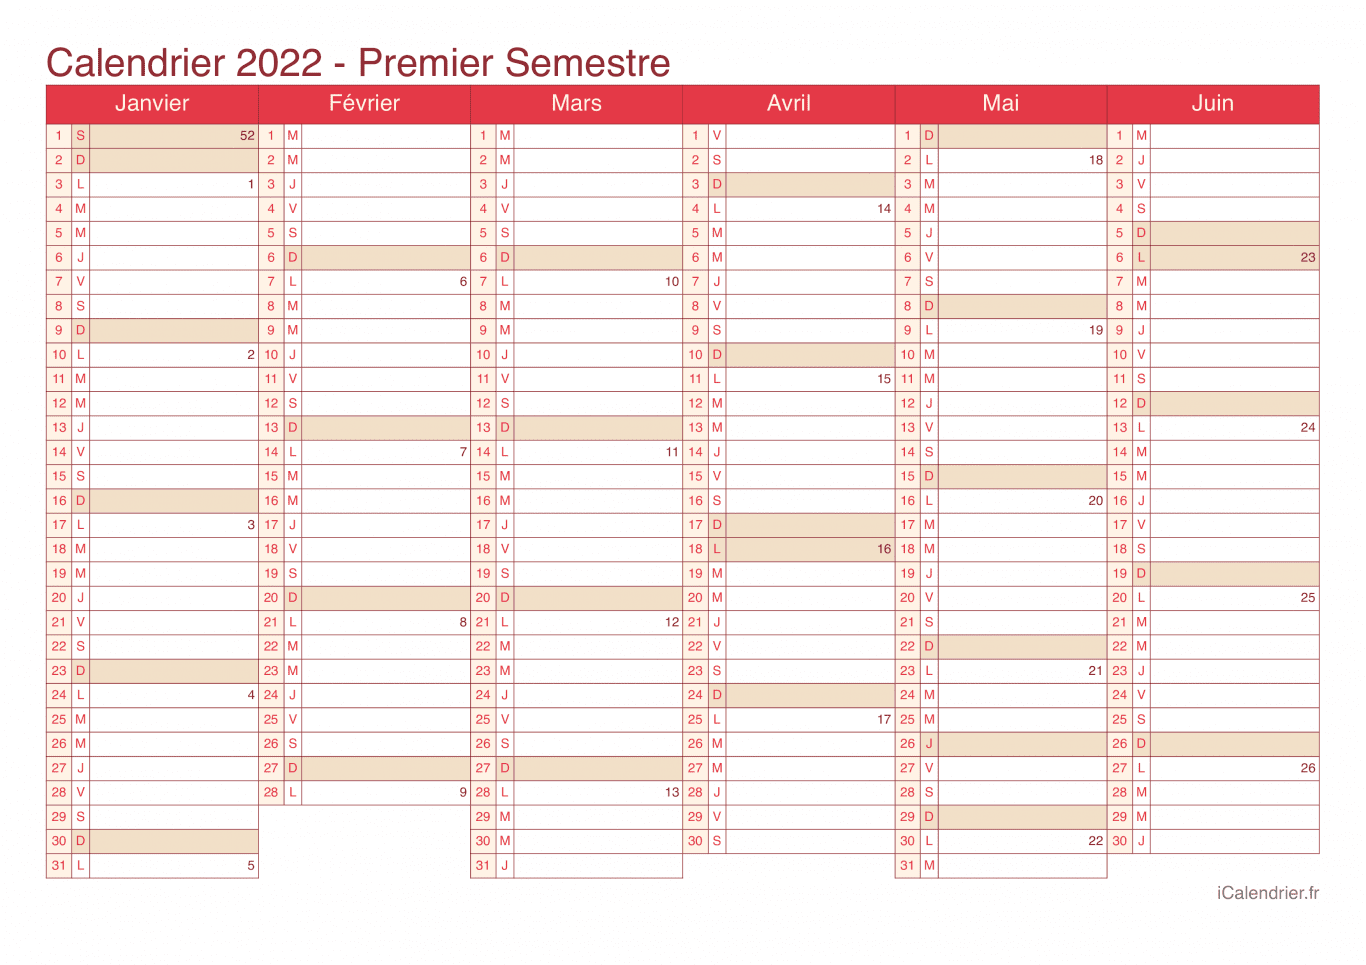 Calendrier par semestre avec numéros des semaines 2022 - Cherry